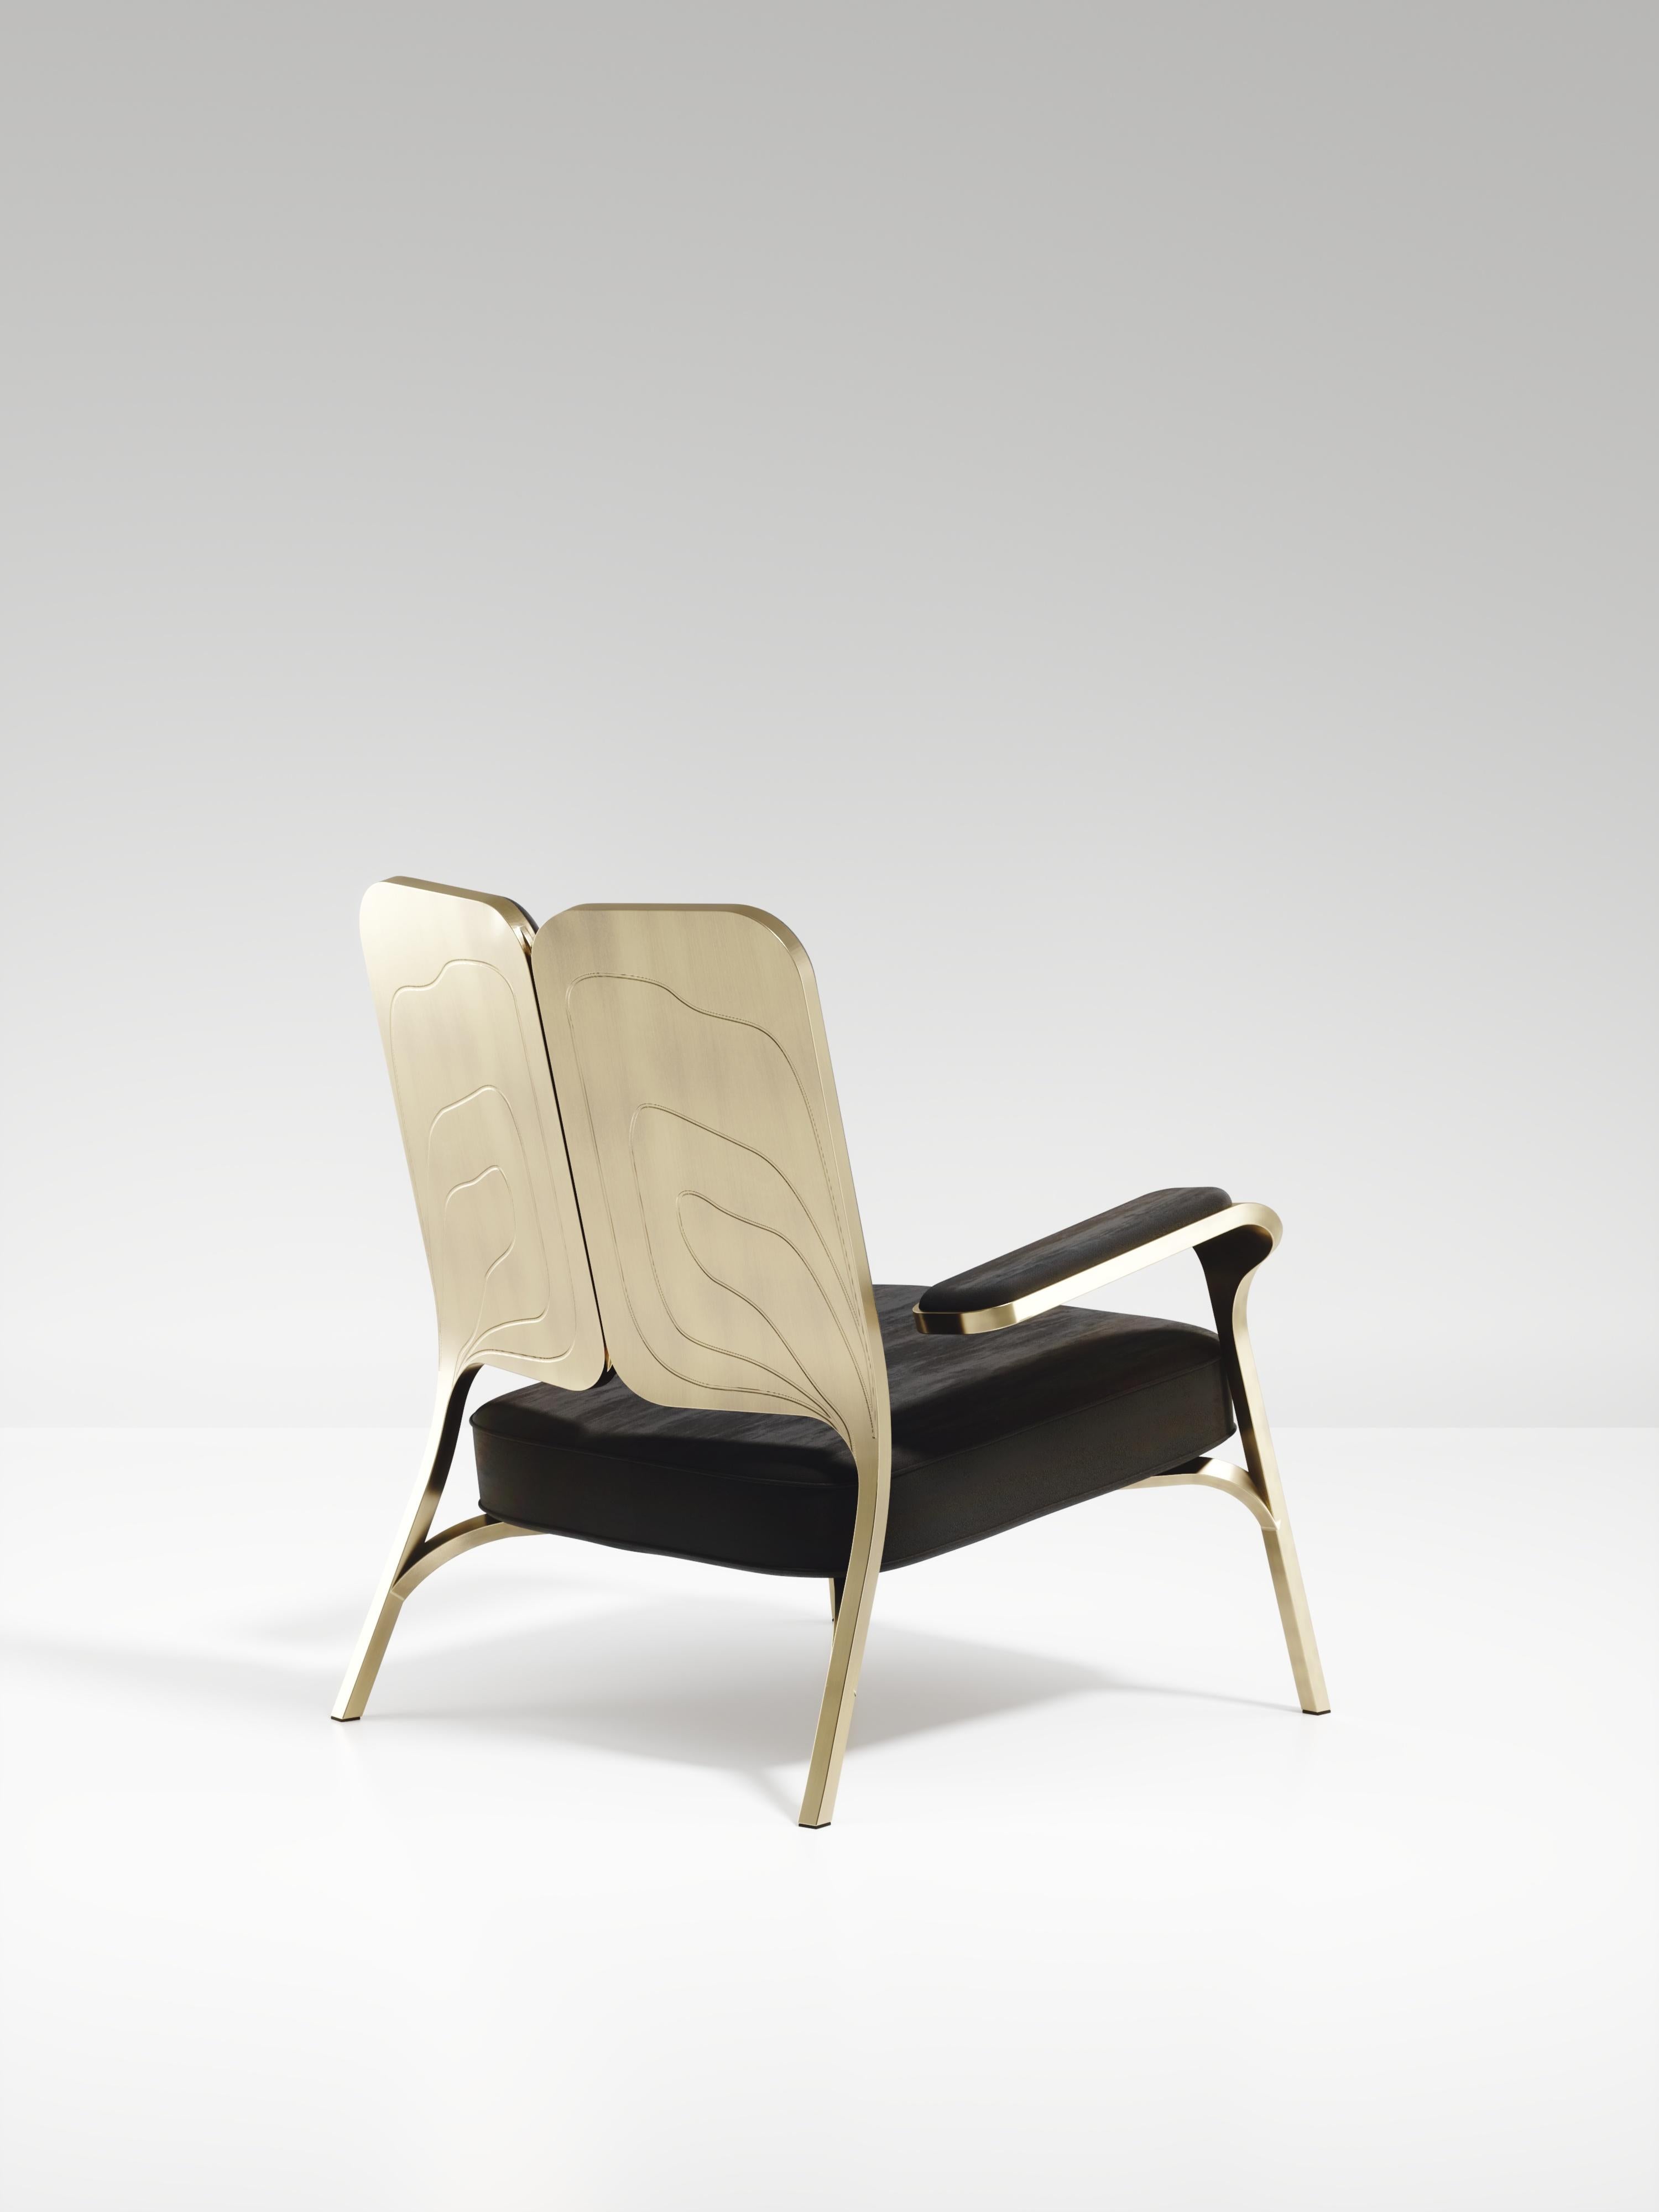 Le fauteuil Gingko de R&Y Augousti est une pièce élégante et fantaisiste. La pièce rembourrée en velours noir offre un confort tout en dégageant une esthétique ludique dans son clin d'œil abstrait à un papillon avec la forme de son dossier et les